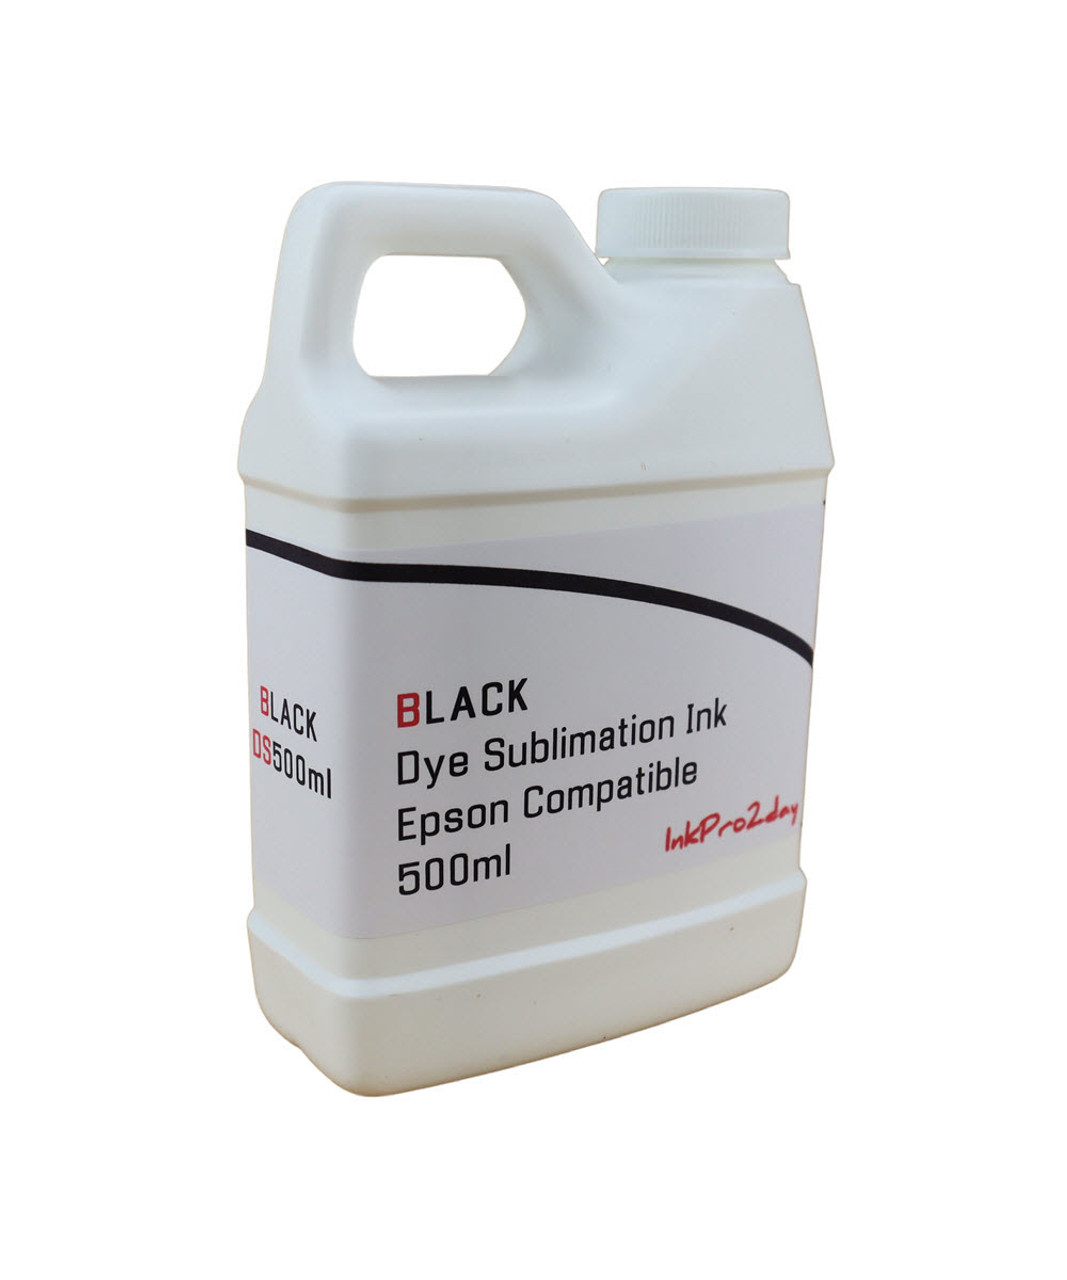 Black Dye Sublimation Ink bottle 500ml for Epson SureColor F570 printer